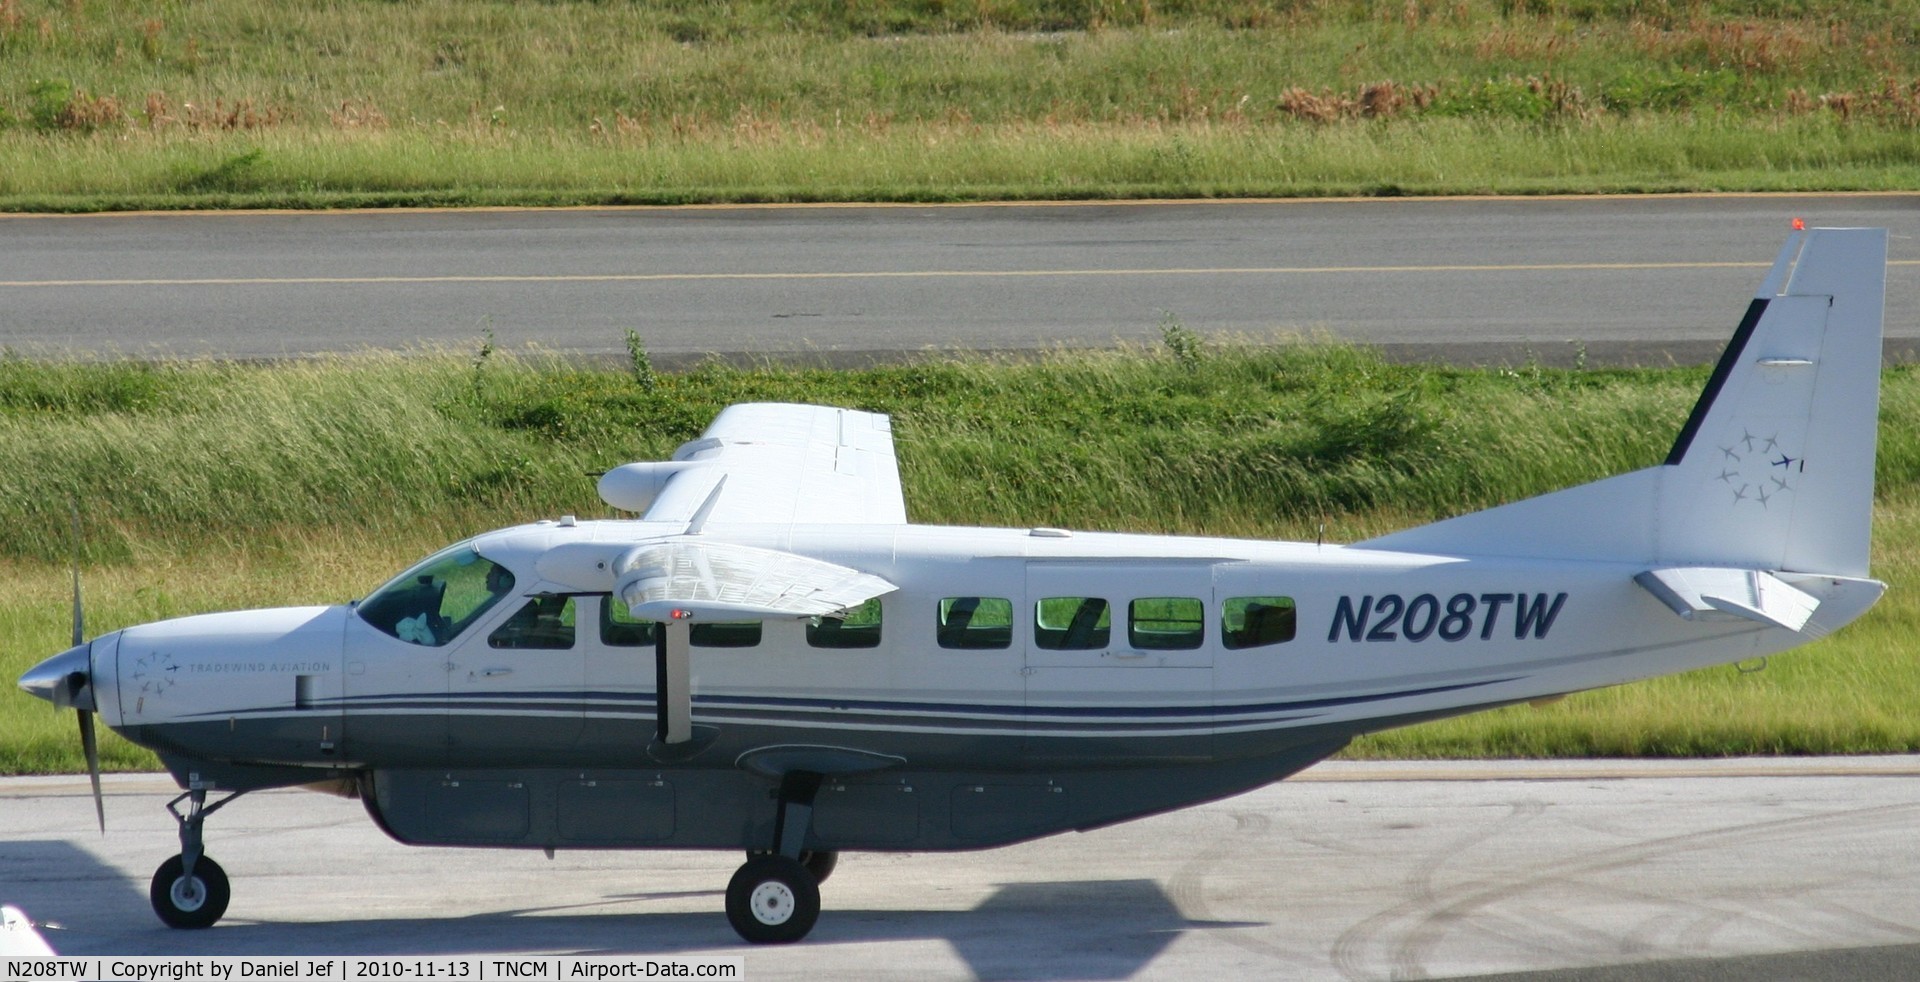 N208TW, 1998 Cessna 208B C/N 208B0671, N208TW parking at the cargo ramp